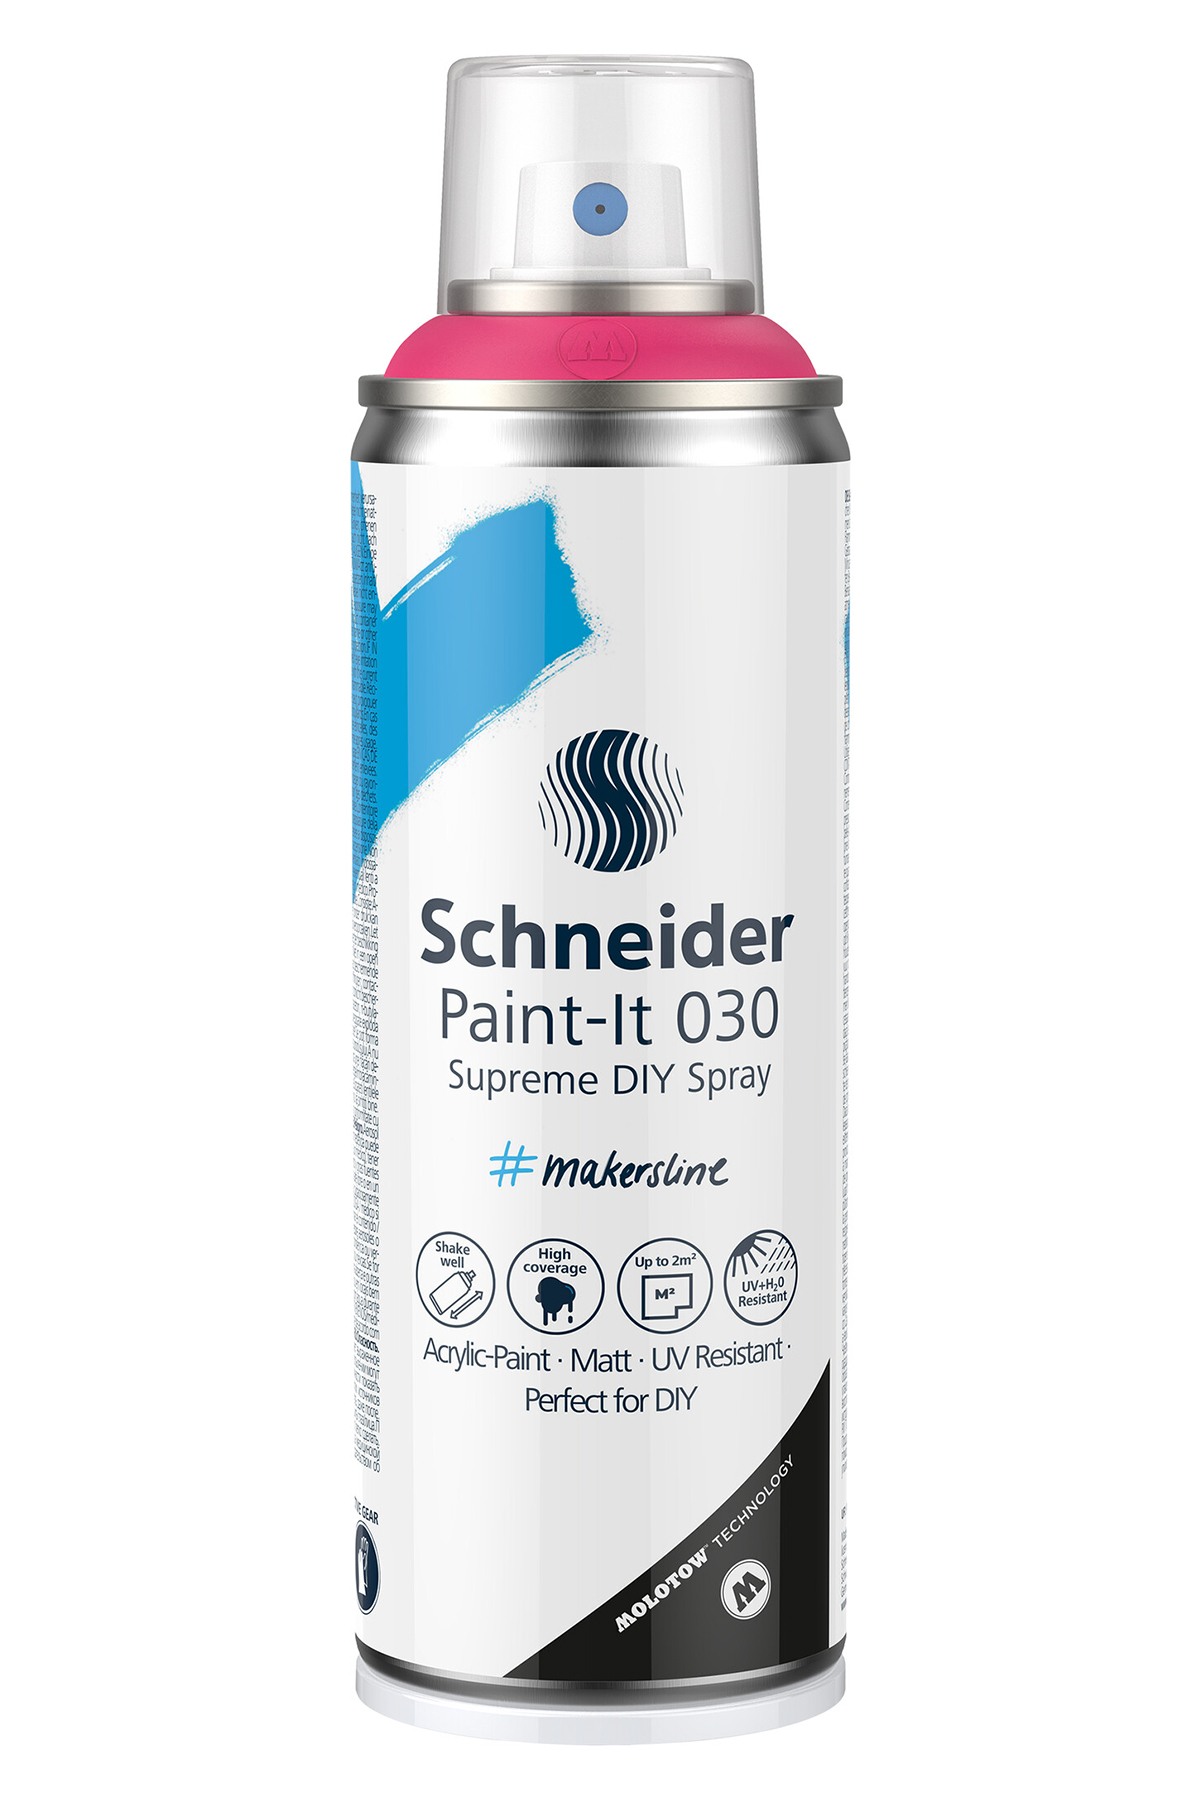 schneider-paint-it-030-supreme-diy-est-parfait-pour-les-applications-a-grande-echelle-sur-presque-tous-les-supports-et-inspire-constamment-de-nouvelles-idees.1922.jpg